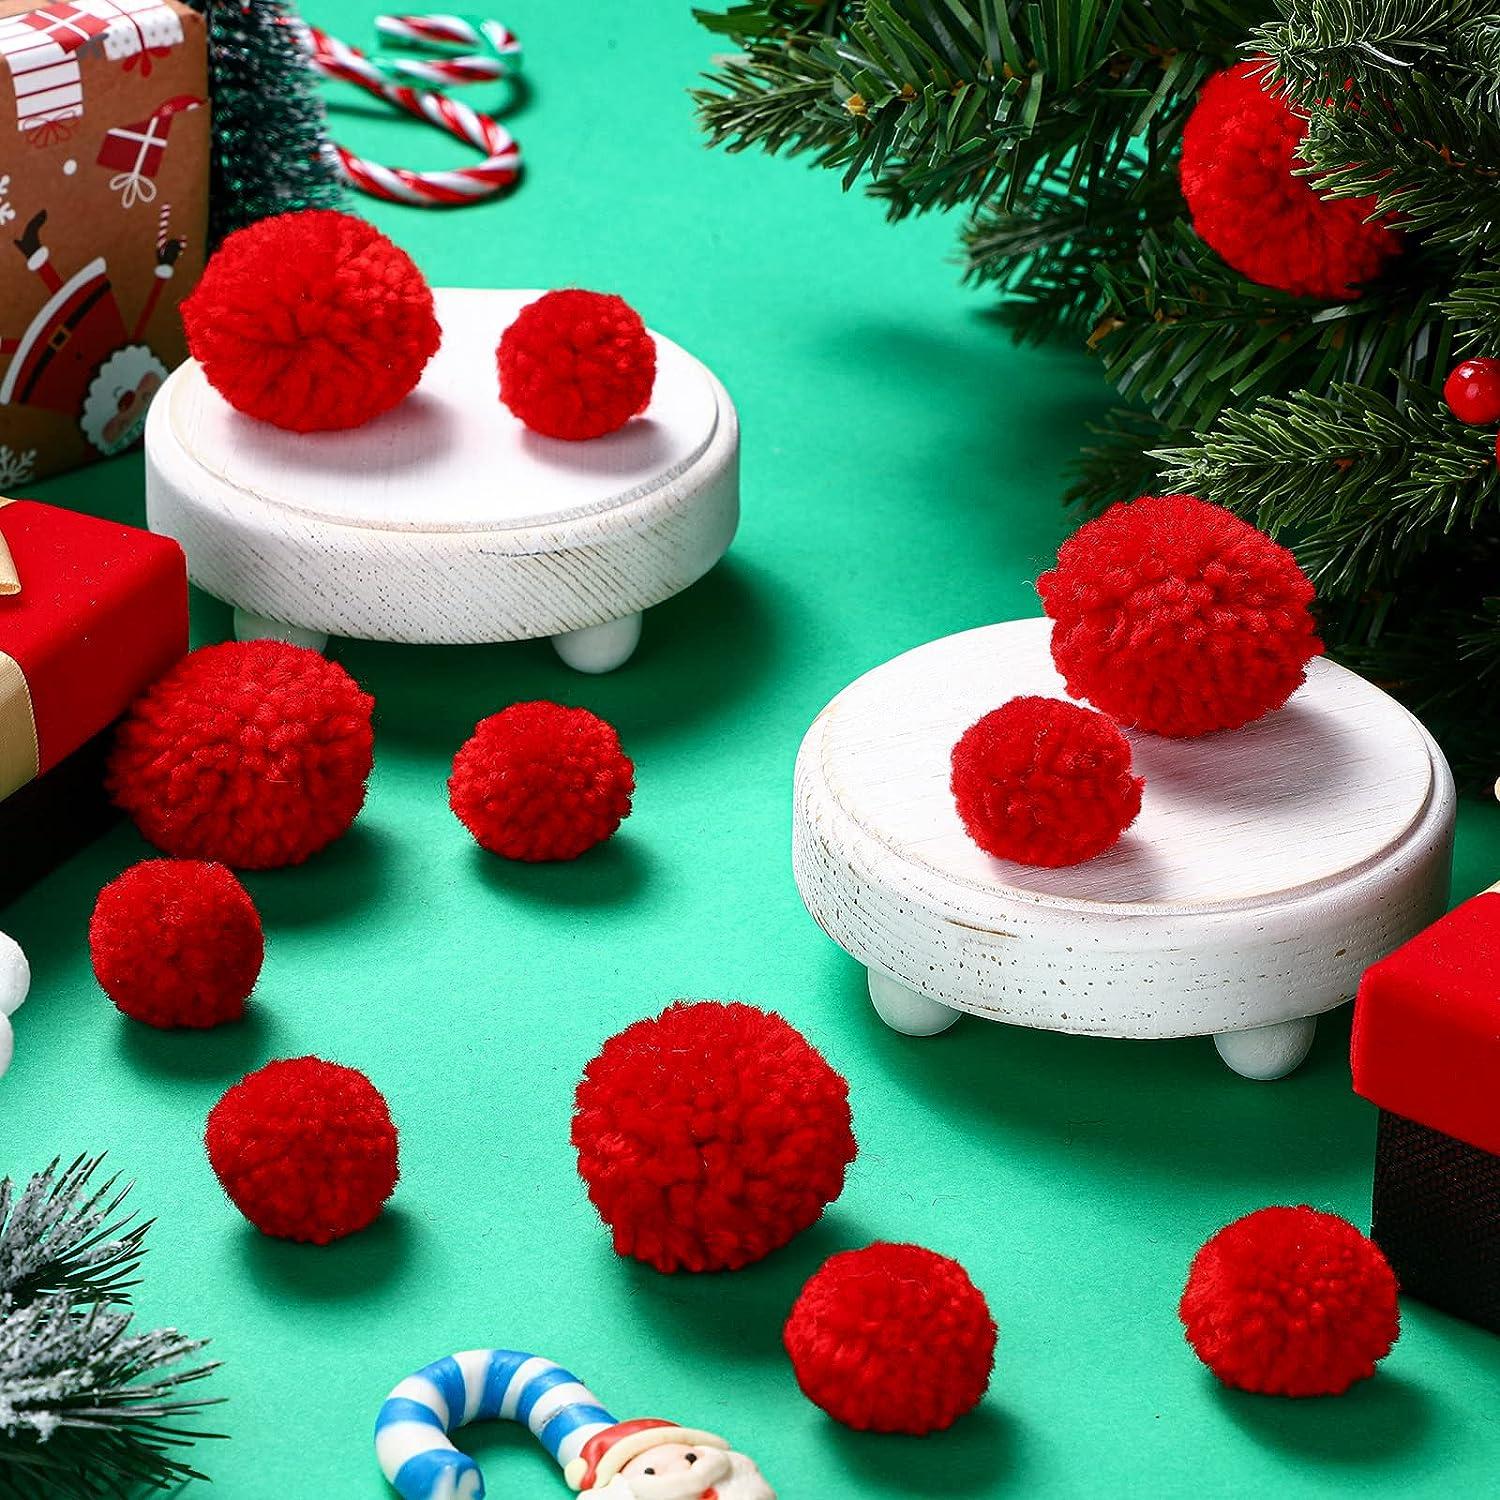 Christmas Diy Sewing Pom Poms, Pom Poms Christmas Crafts